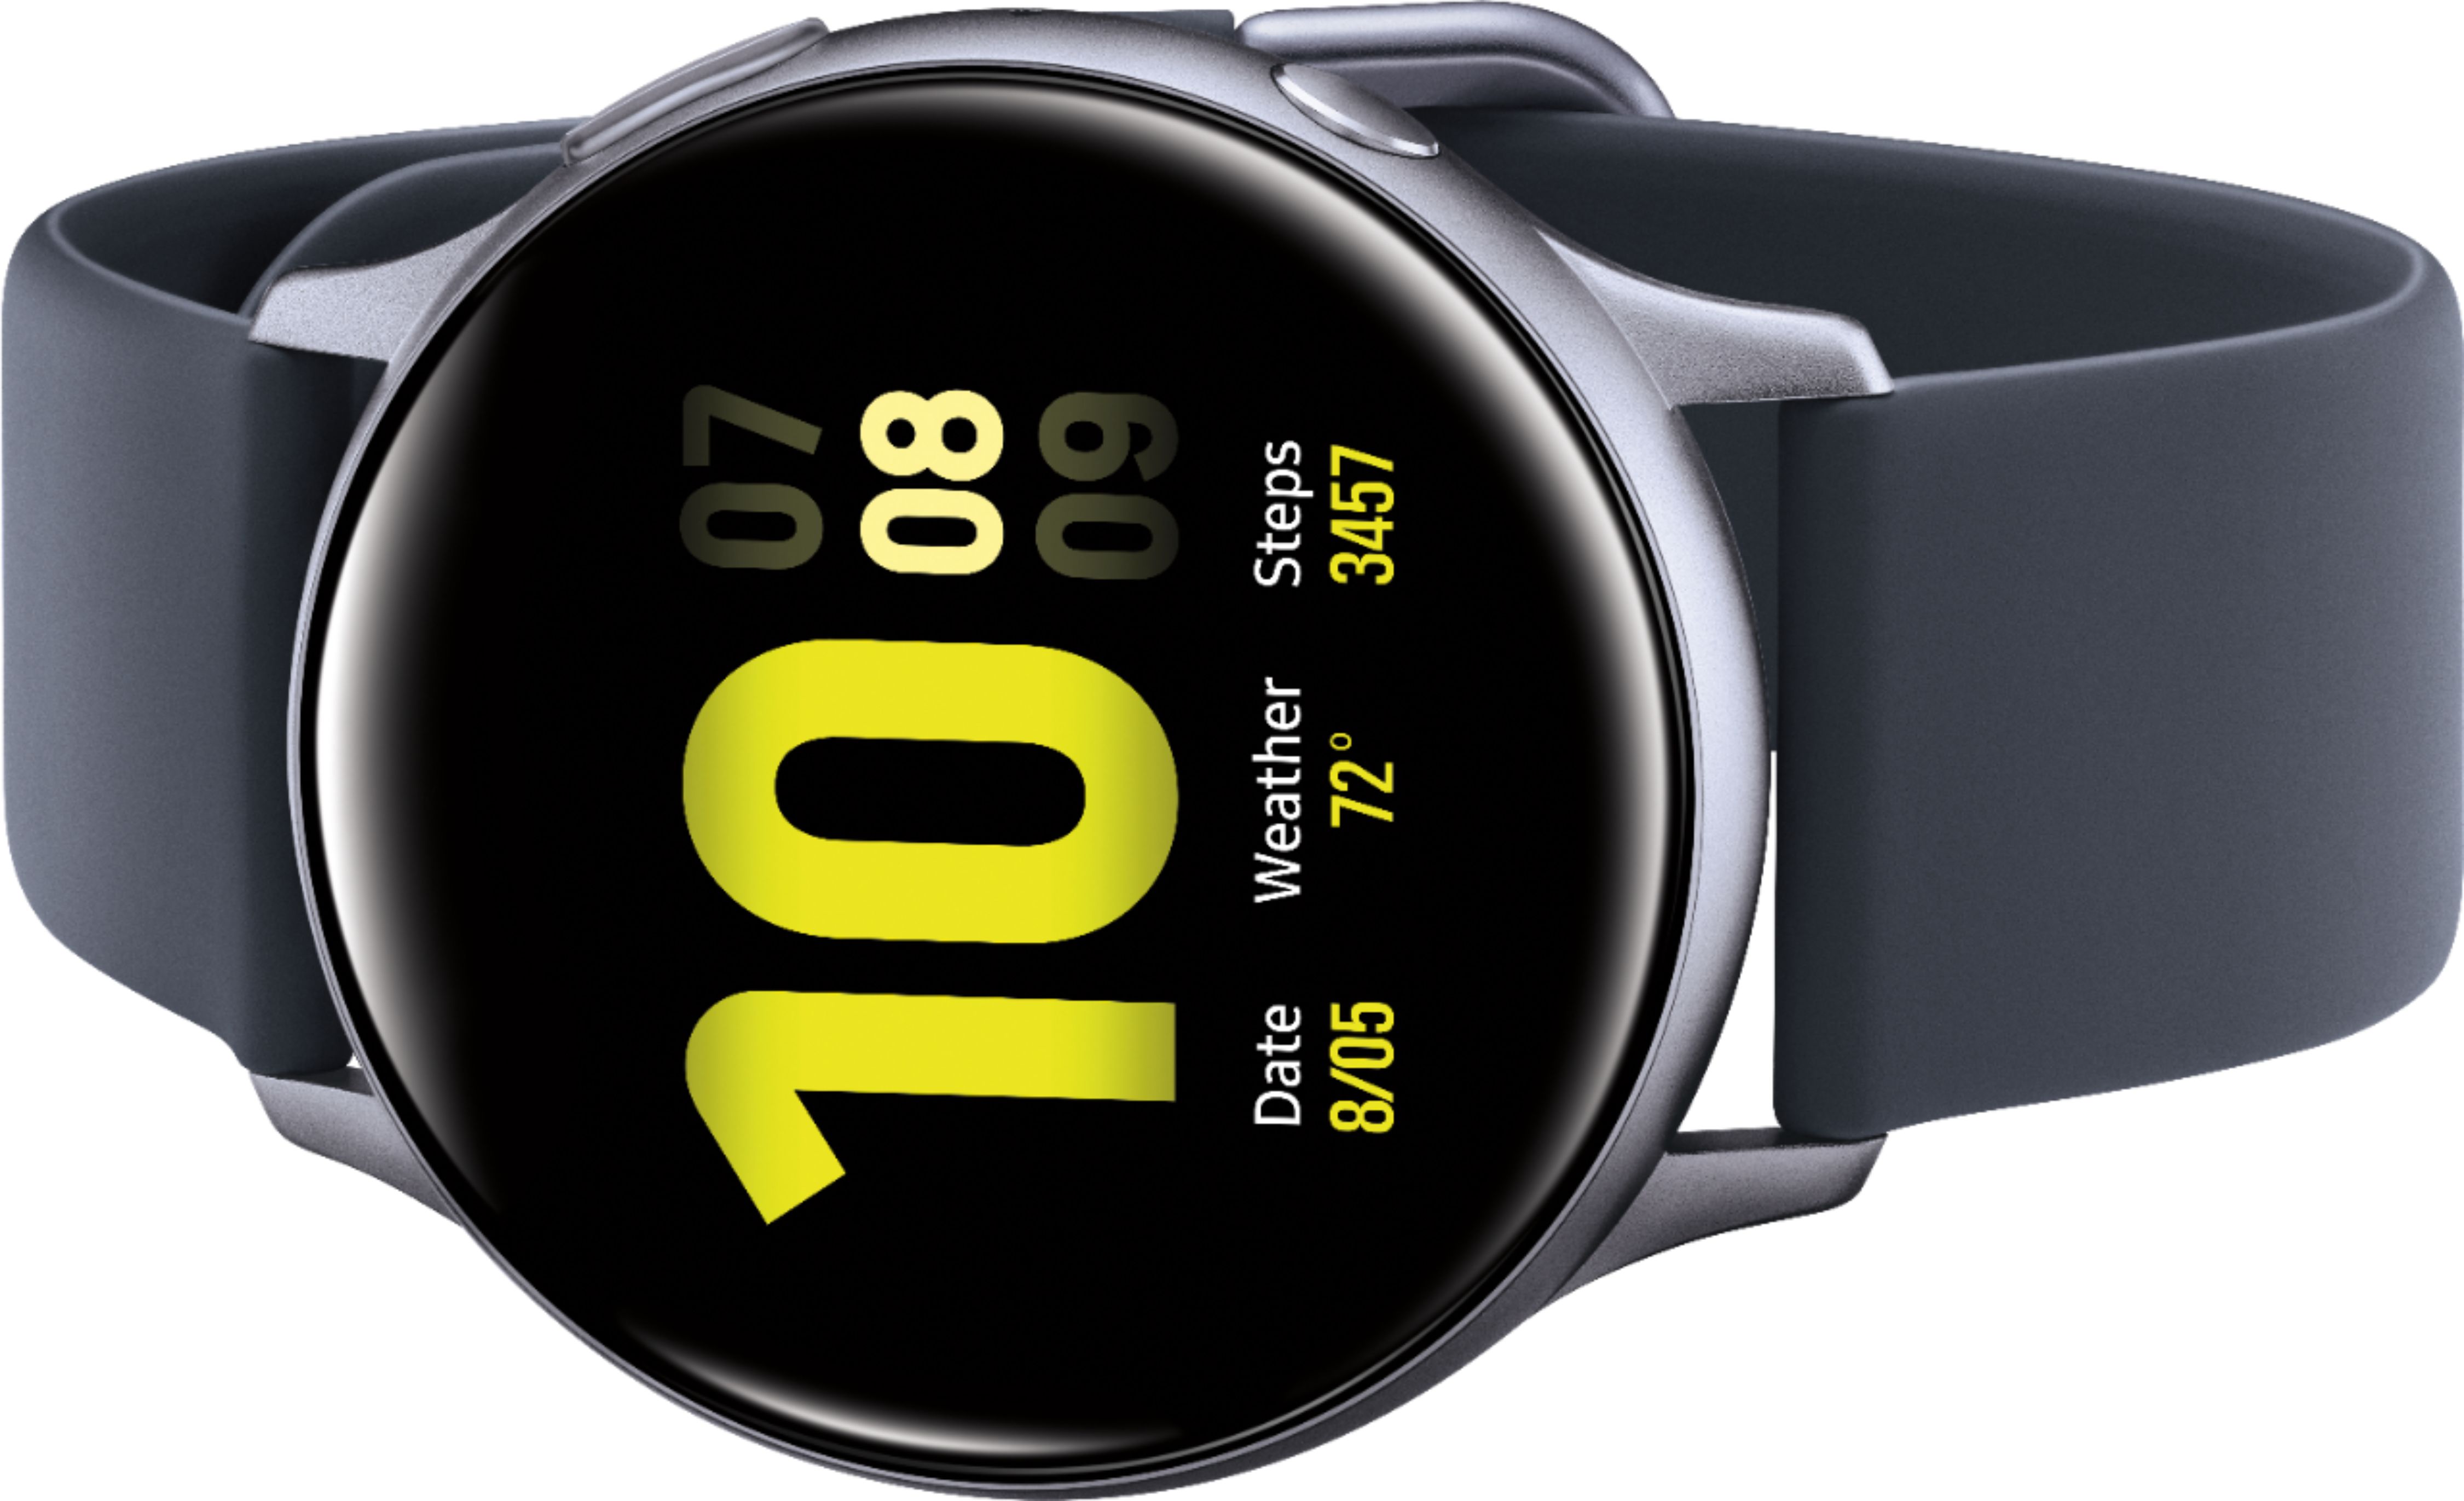 Buff Protector Reloj Inteligente Smartwatch Samsung Galaxy Watch Active 2